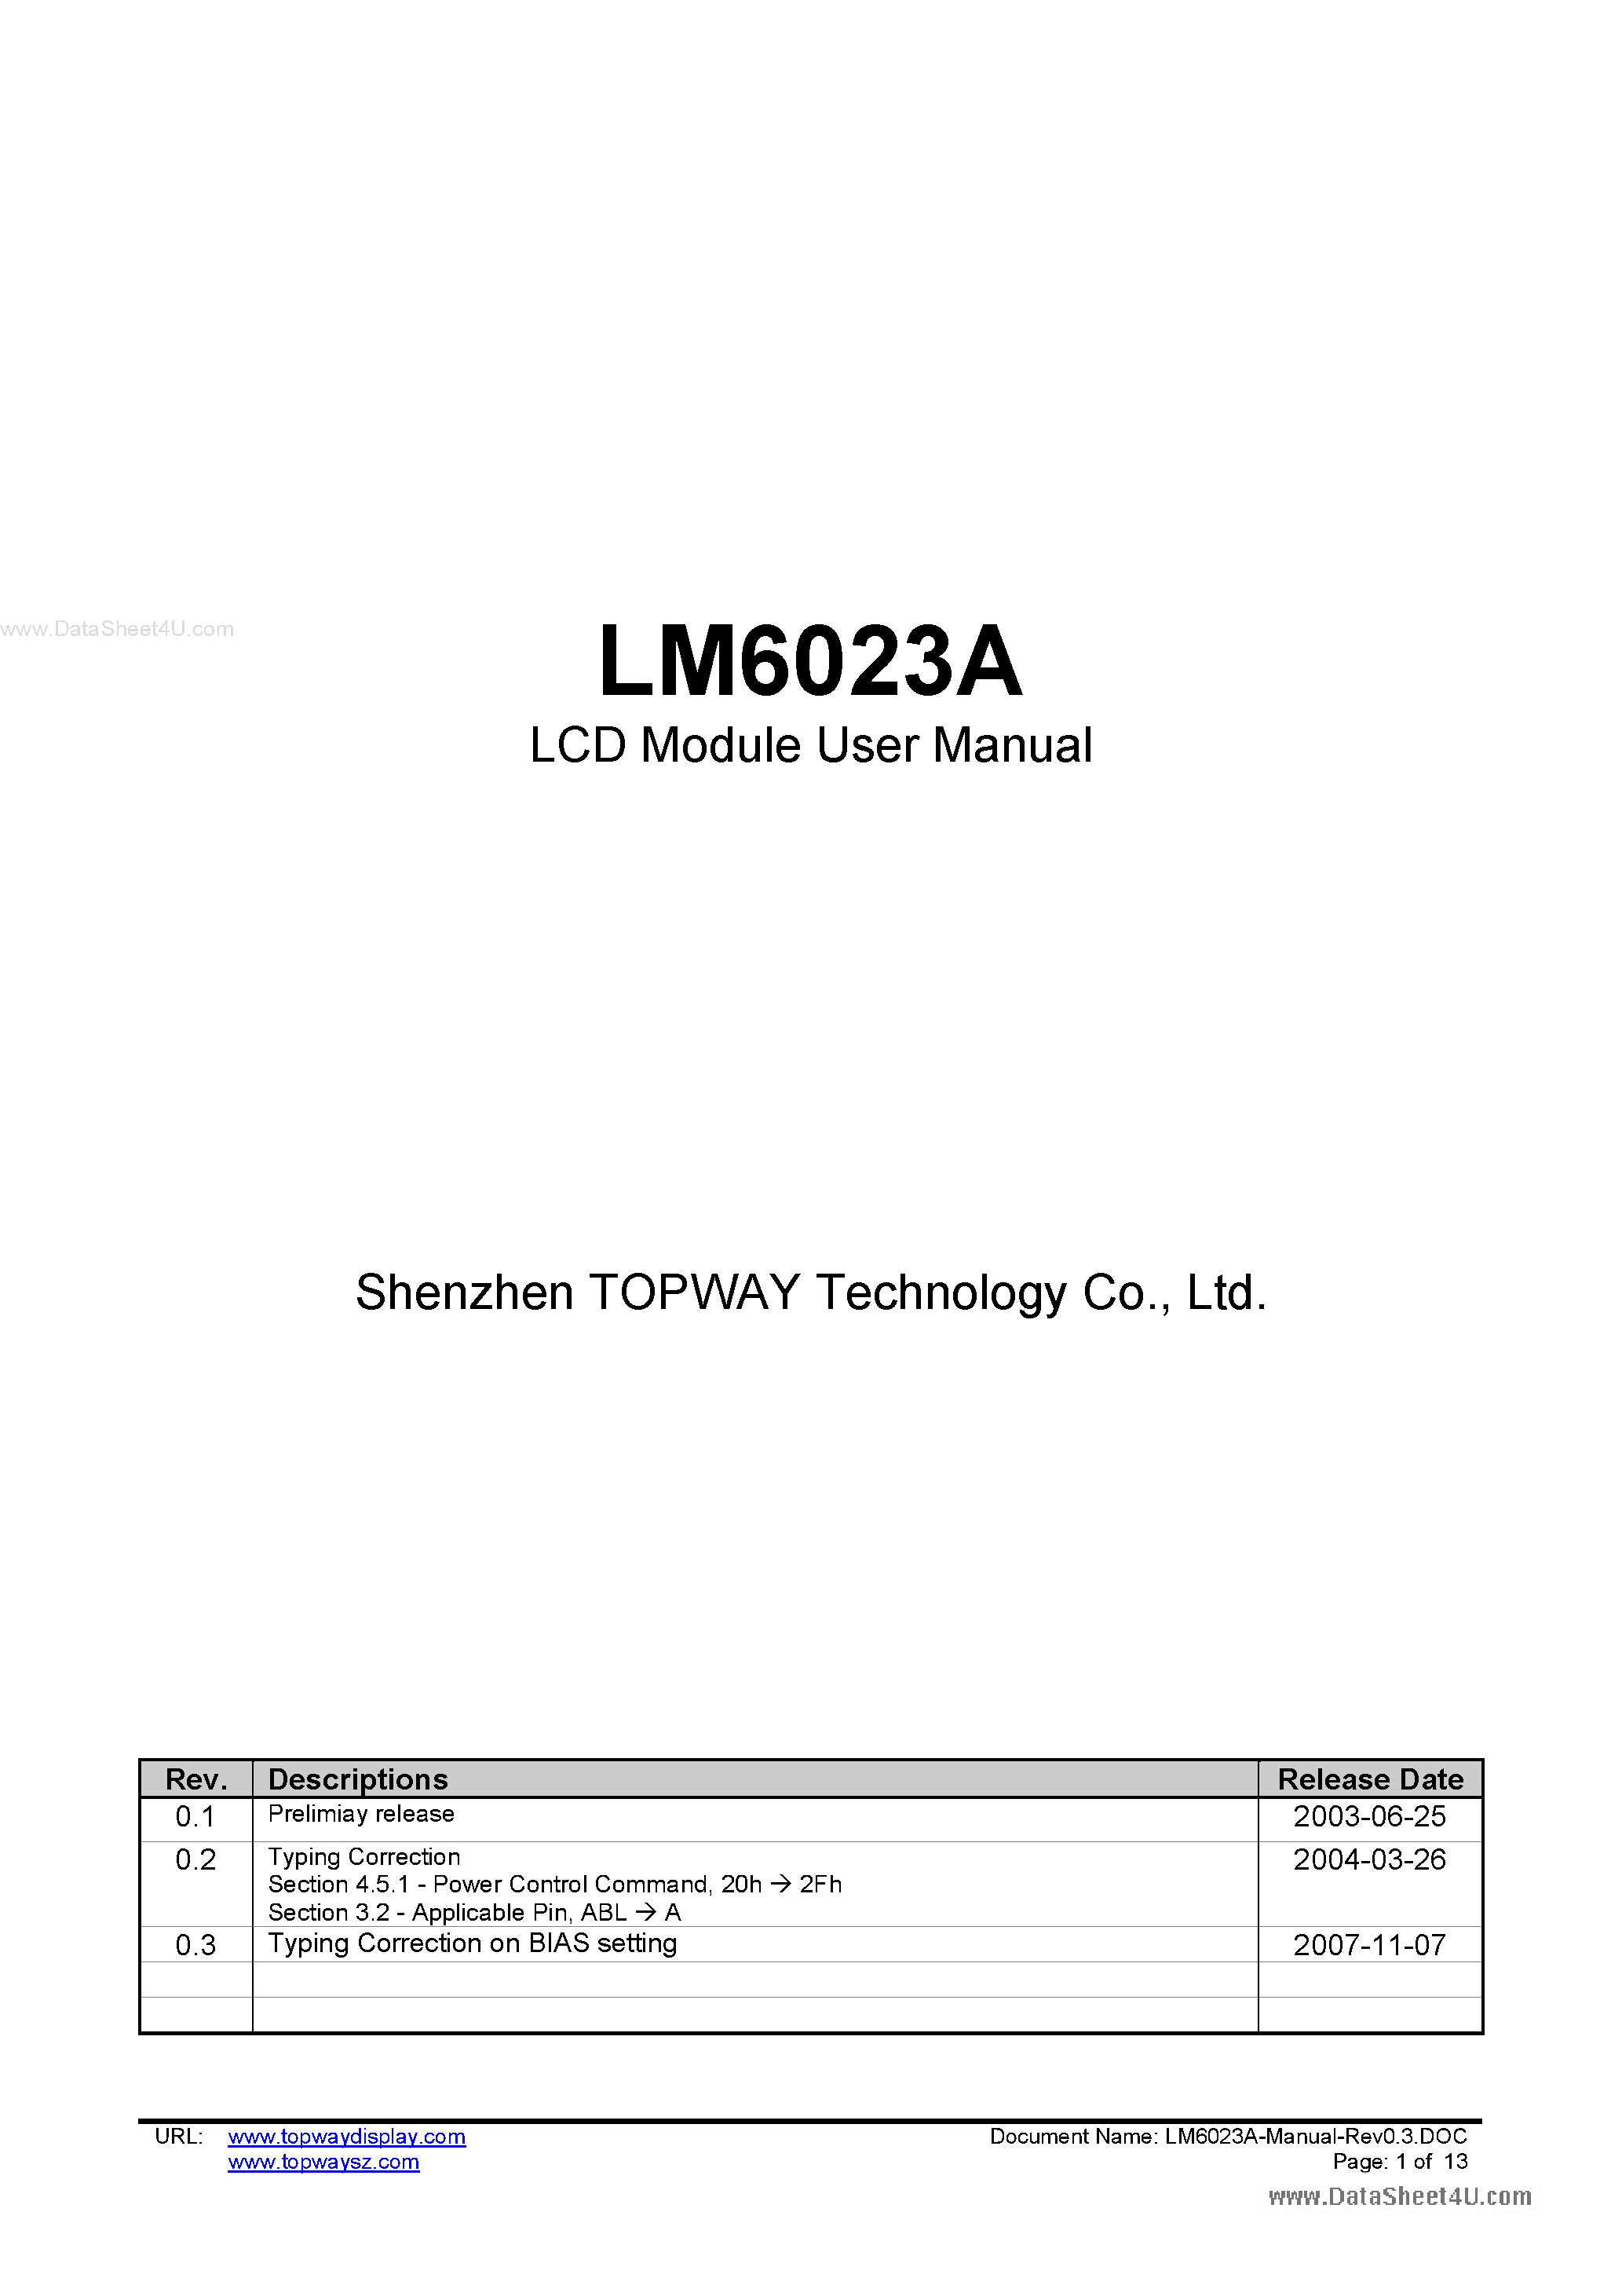 Даташит LM6023A - LCD Module страница 1